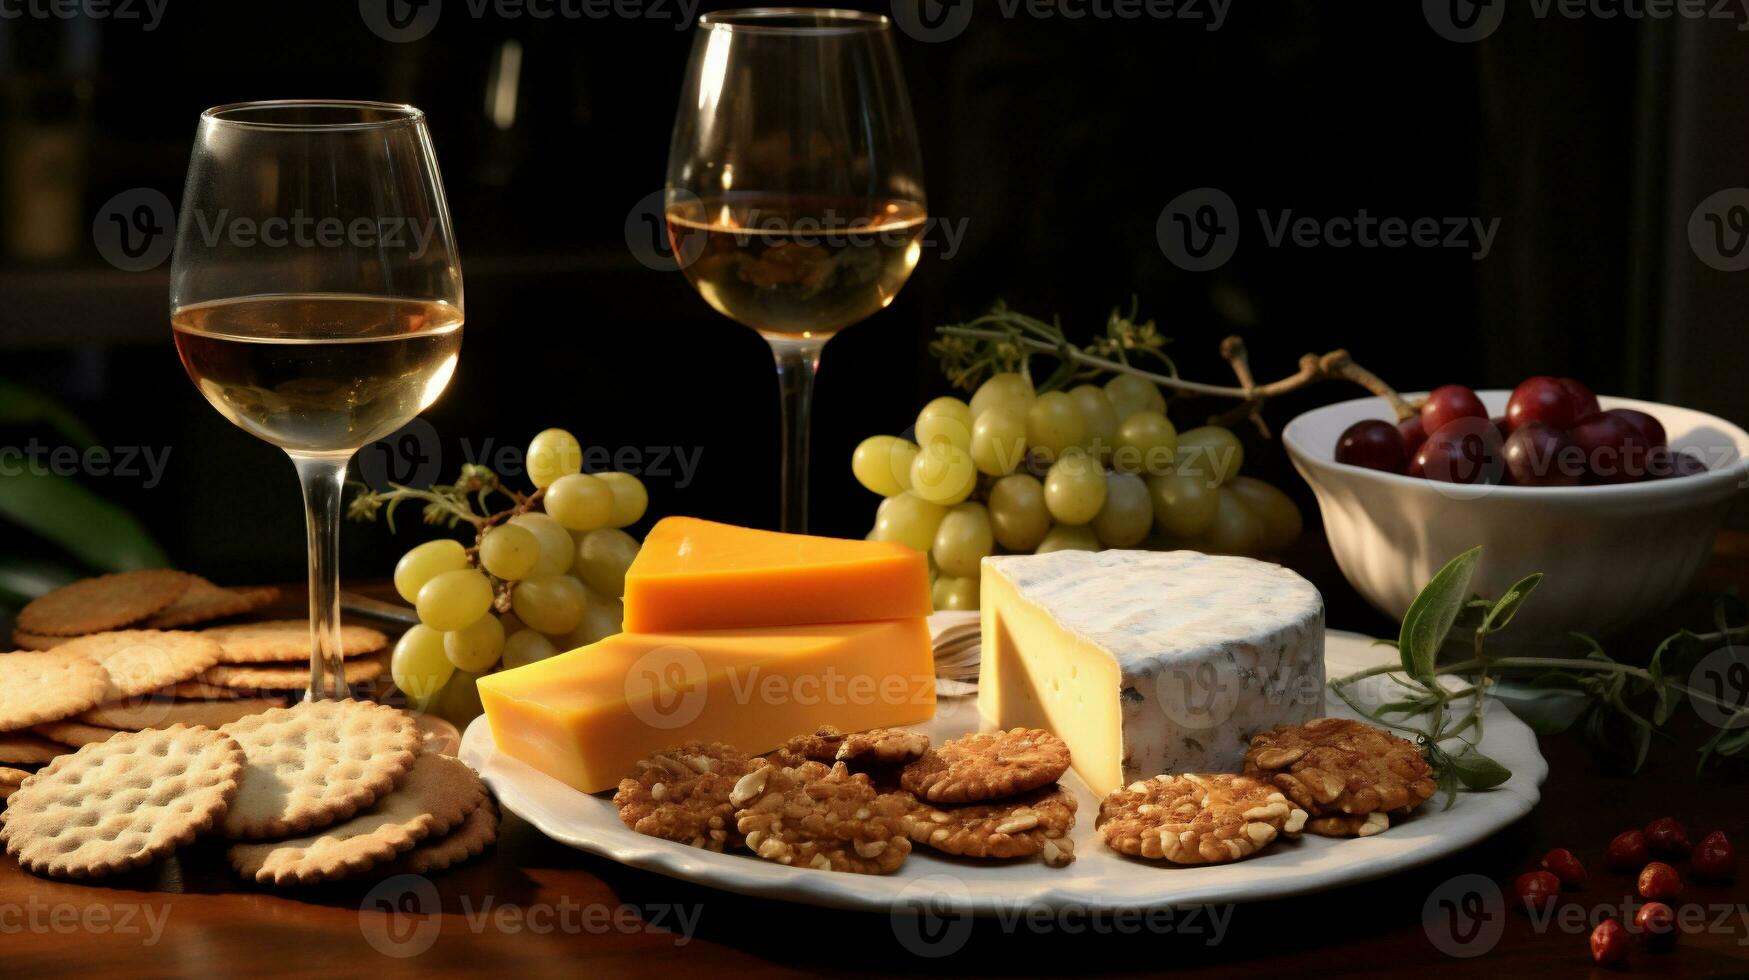 ost tallrik med vindruvor, crackers och vin på mörk bakgrund foto